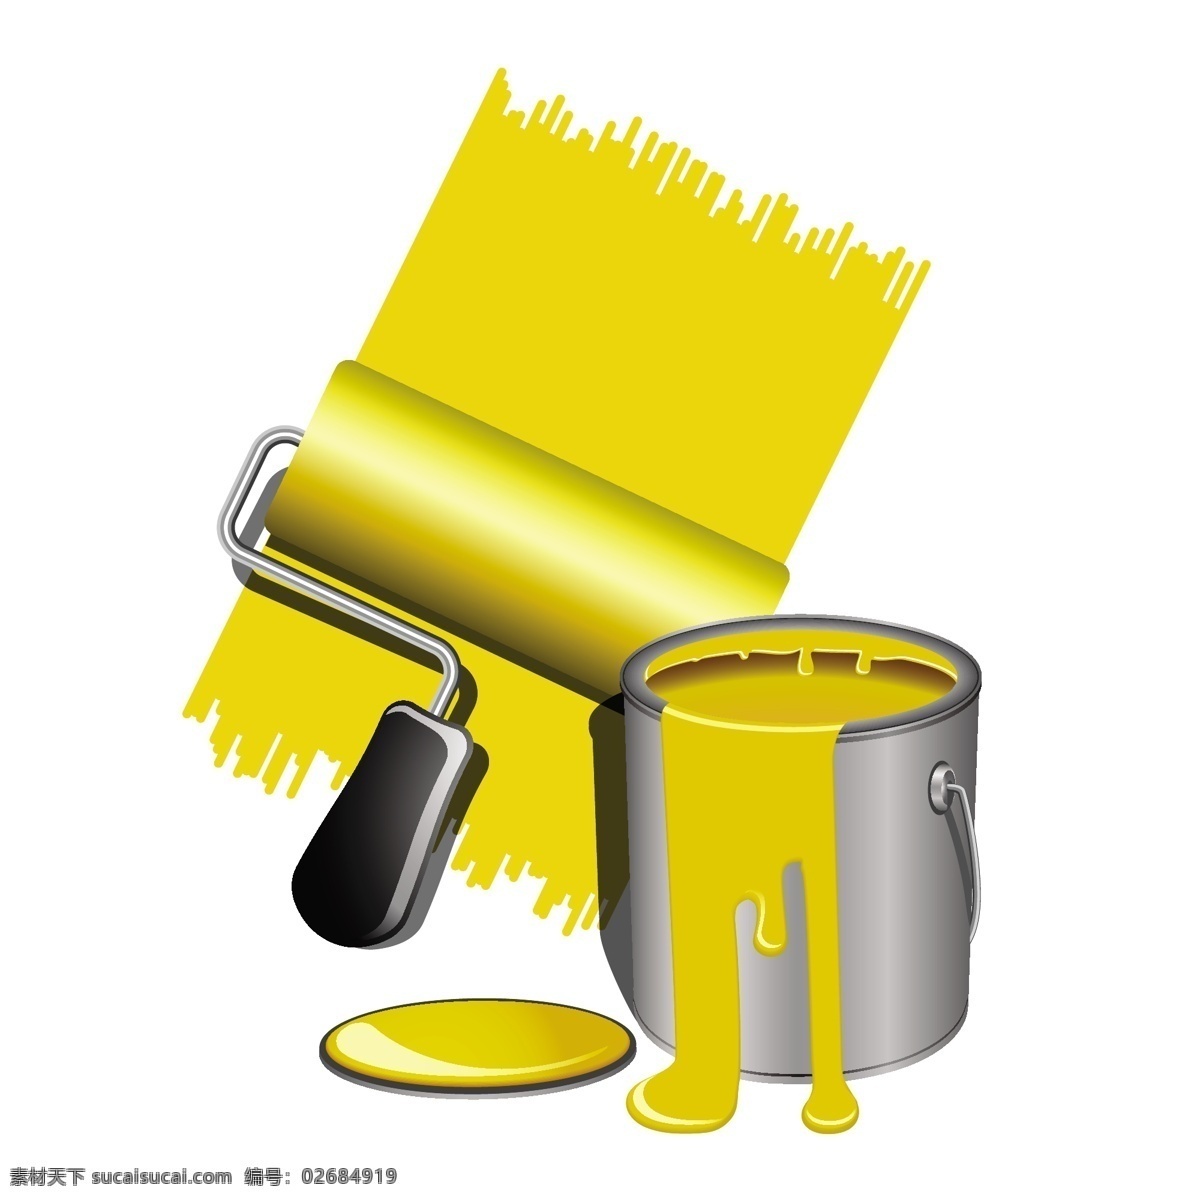 矢量 黄色 油漆桶 背景 矢量素材 刷漆 颜色 液体 油漆 装修 流淌 滴下 羊毛刷 矢量图